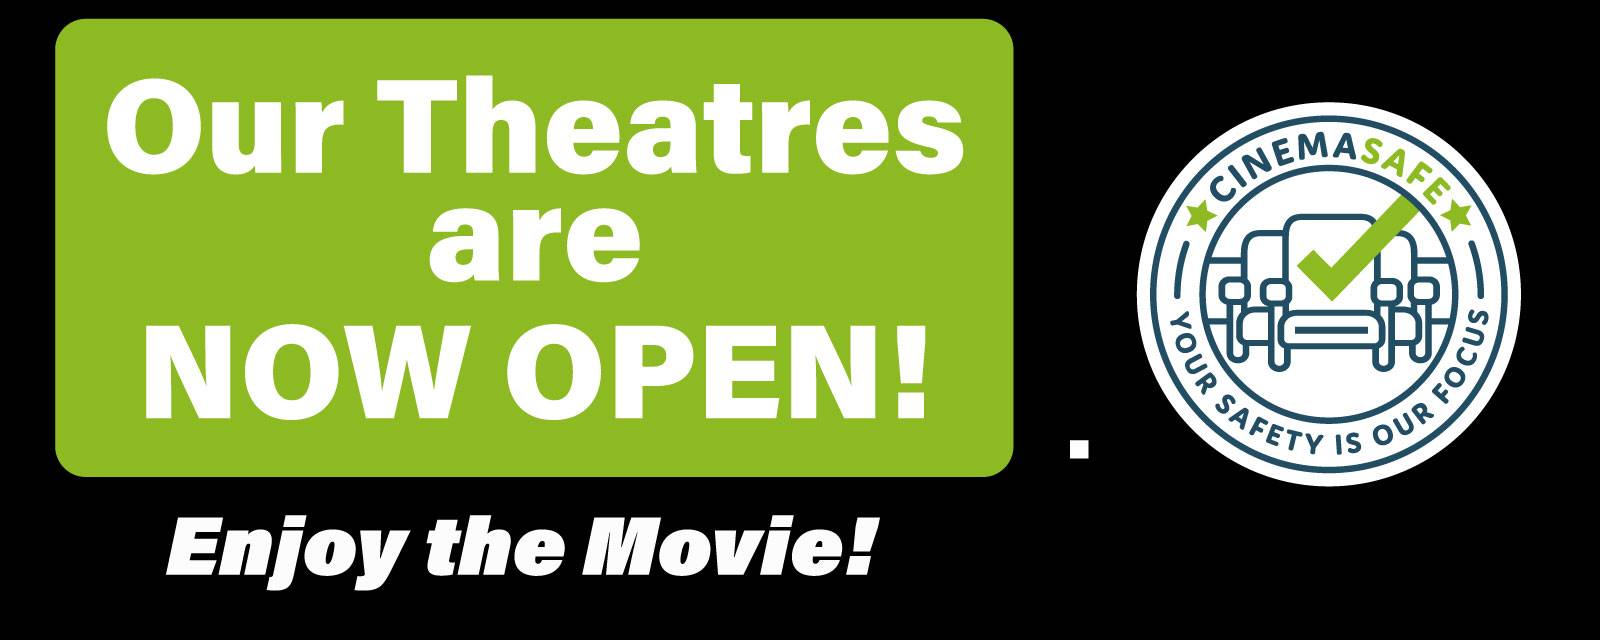 Theatres Open